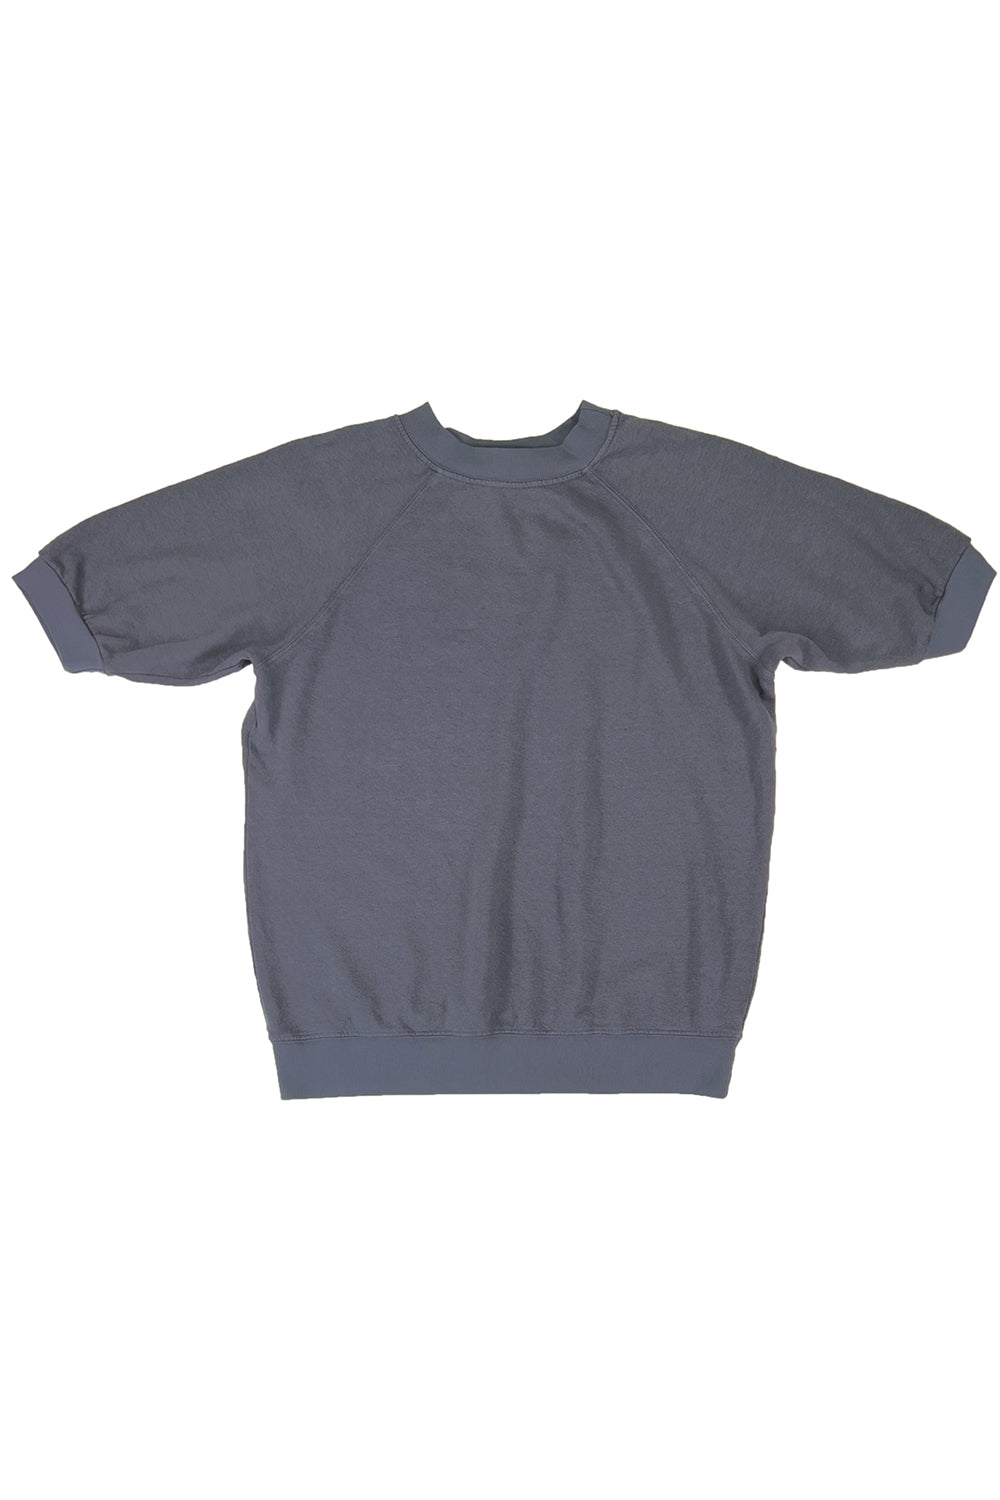 Short Sleeve Raglan Fleece Sweatshirt | Jungmaven Hemp Clothing & Accessories / Color: Diesel Gray